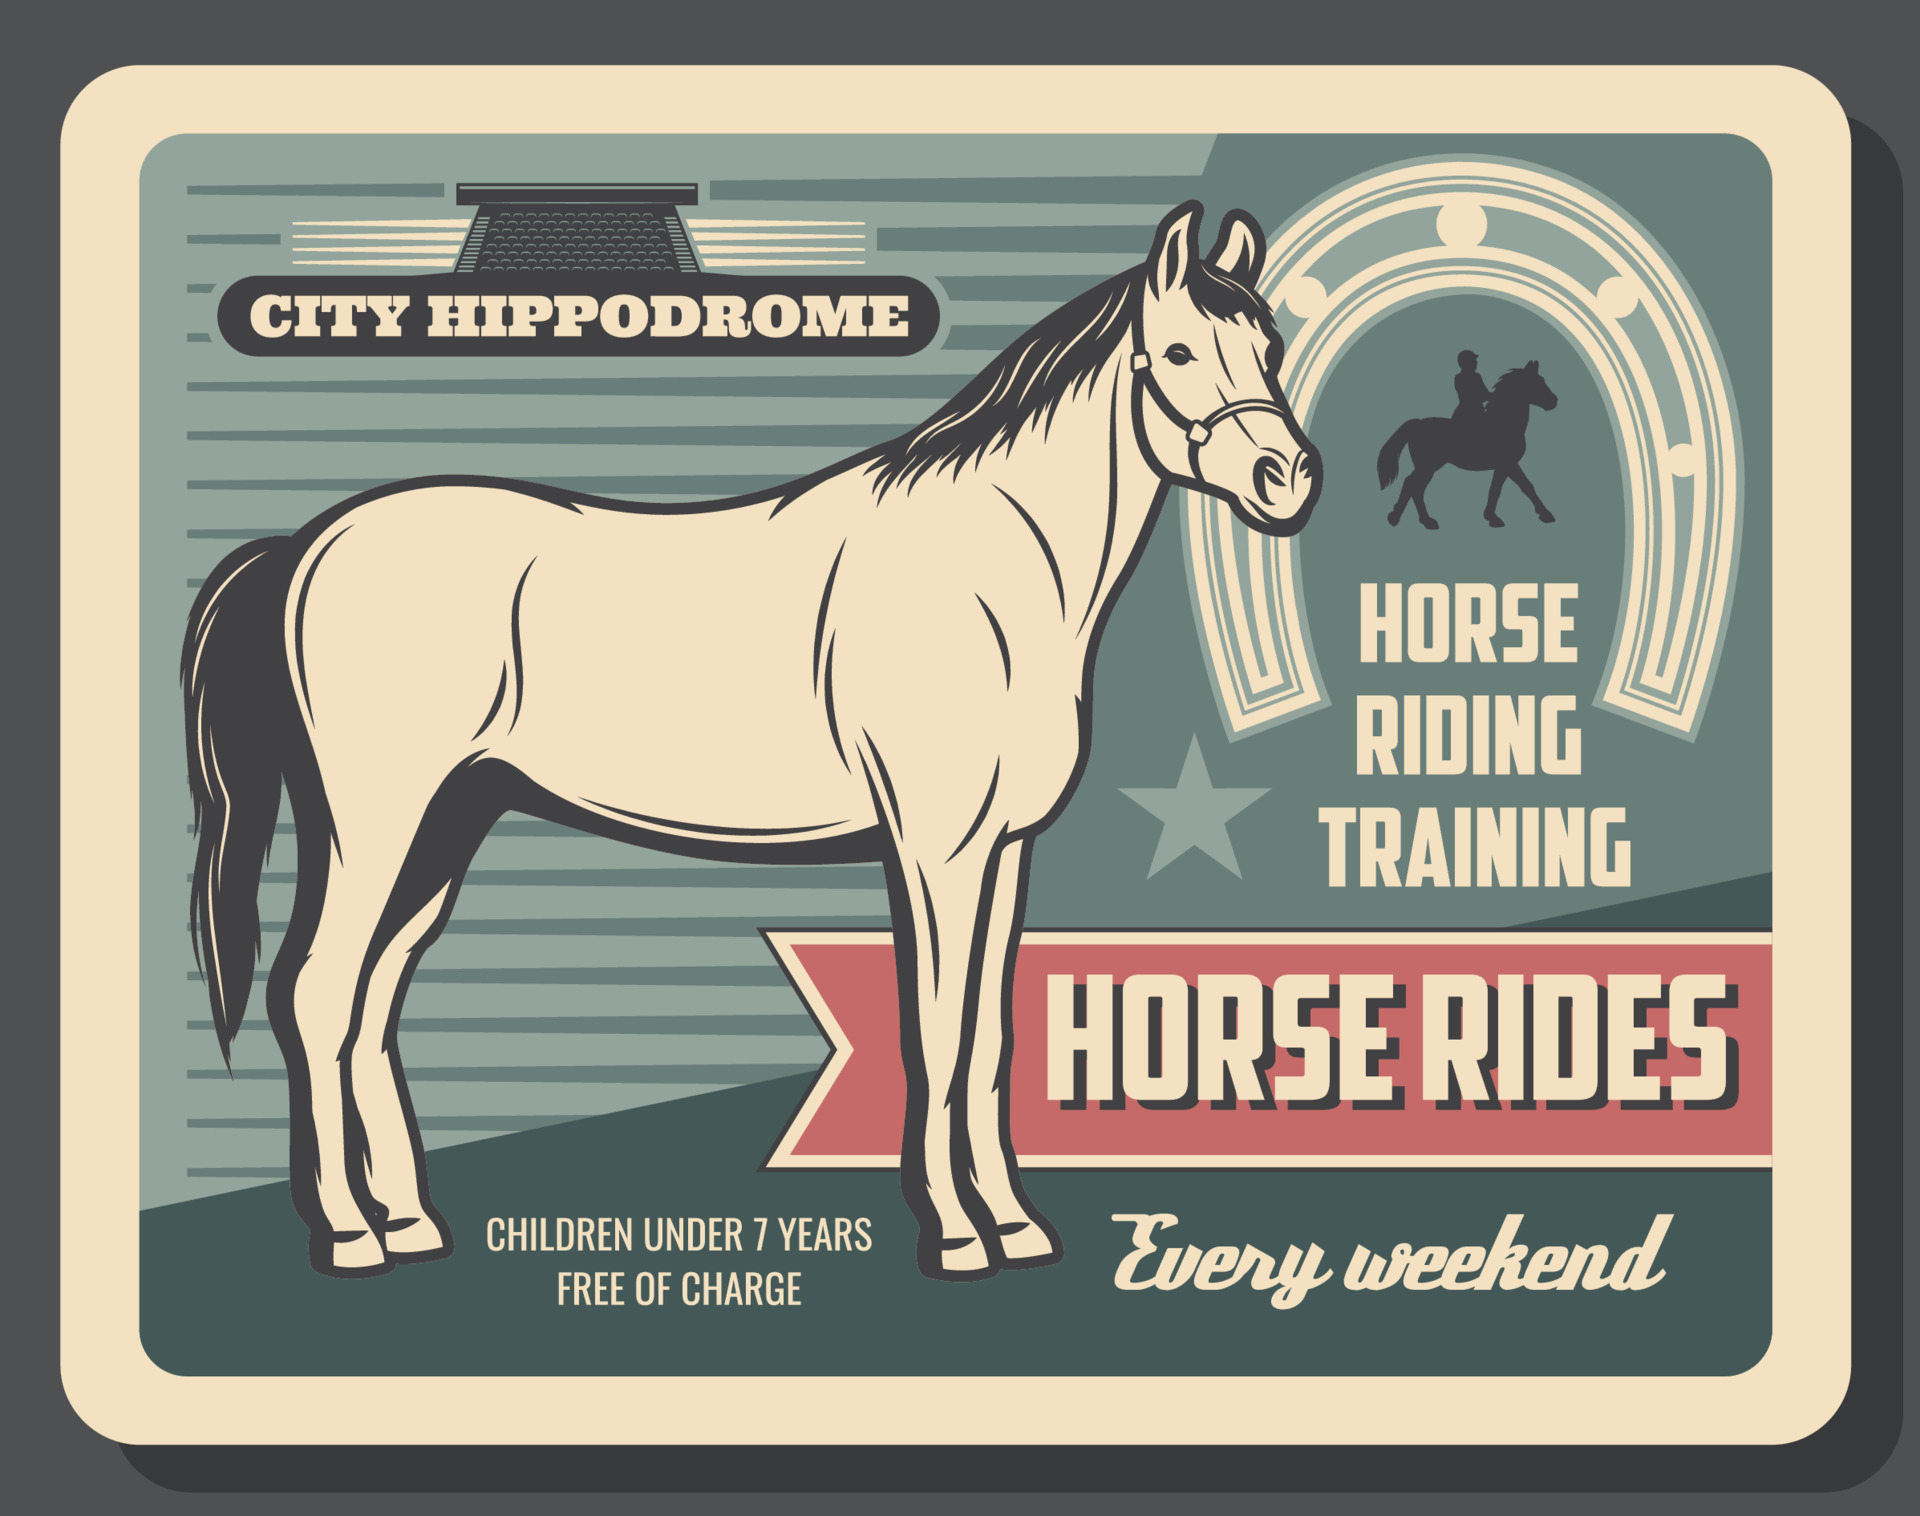 Equestrian sport horse riding, hippodrome 16165778 Vector Art at Vecteezy